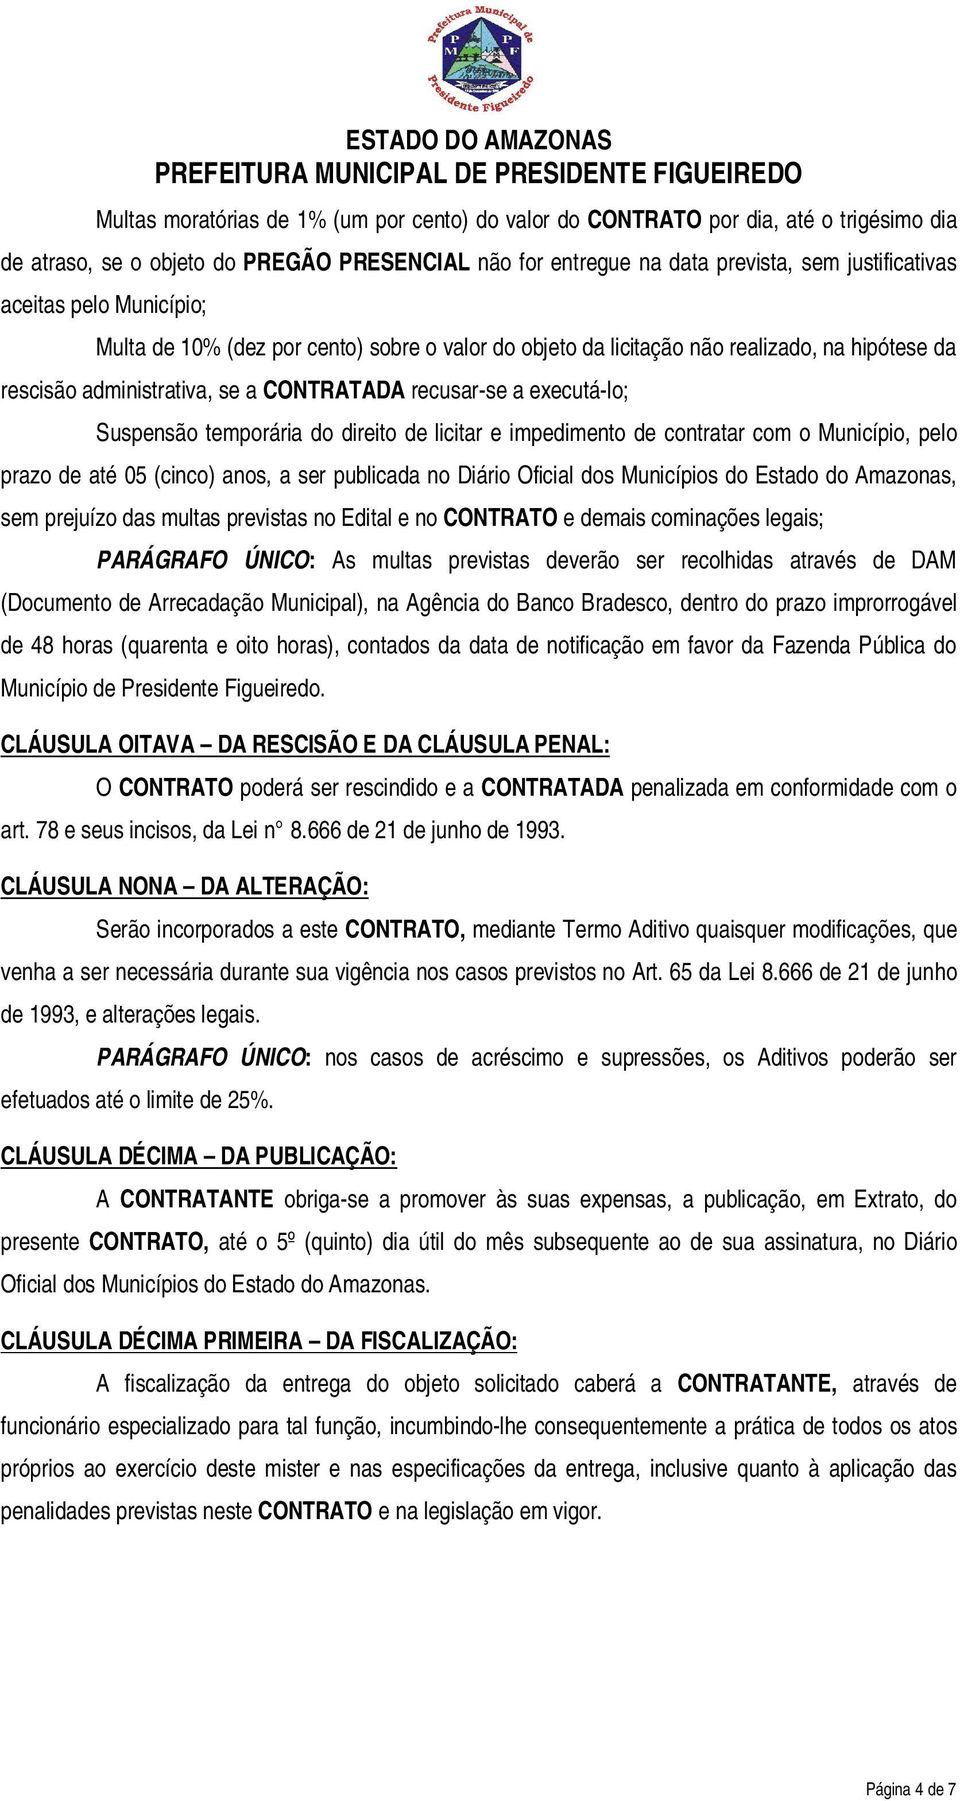 direito de licitar e impedimento de contratar com o Município, pelo prazo de até 05 (cinco) anos, a ser publicada no Diário Oficial dos Municípios do Estado do Amazonas, sem prejuízo das multas